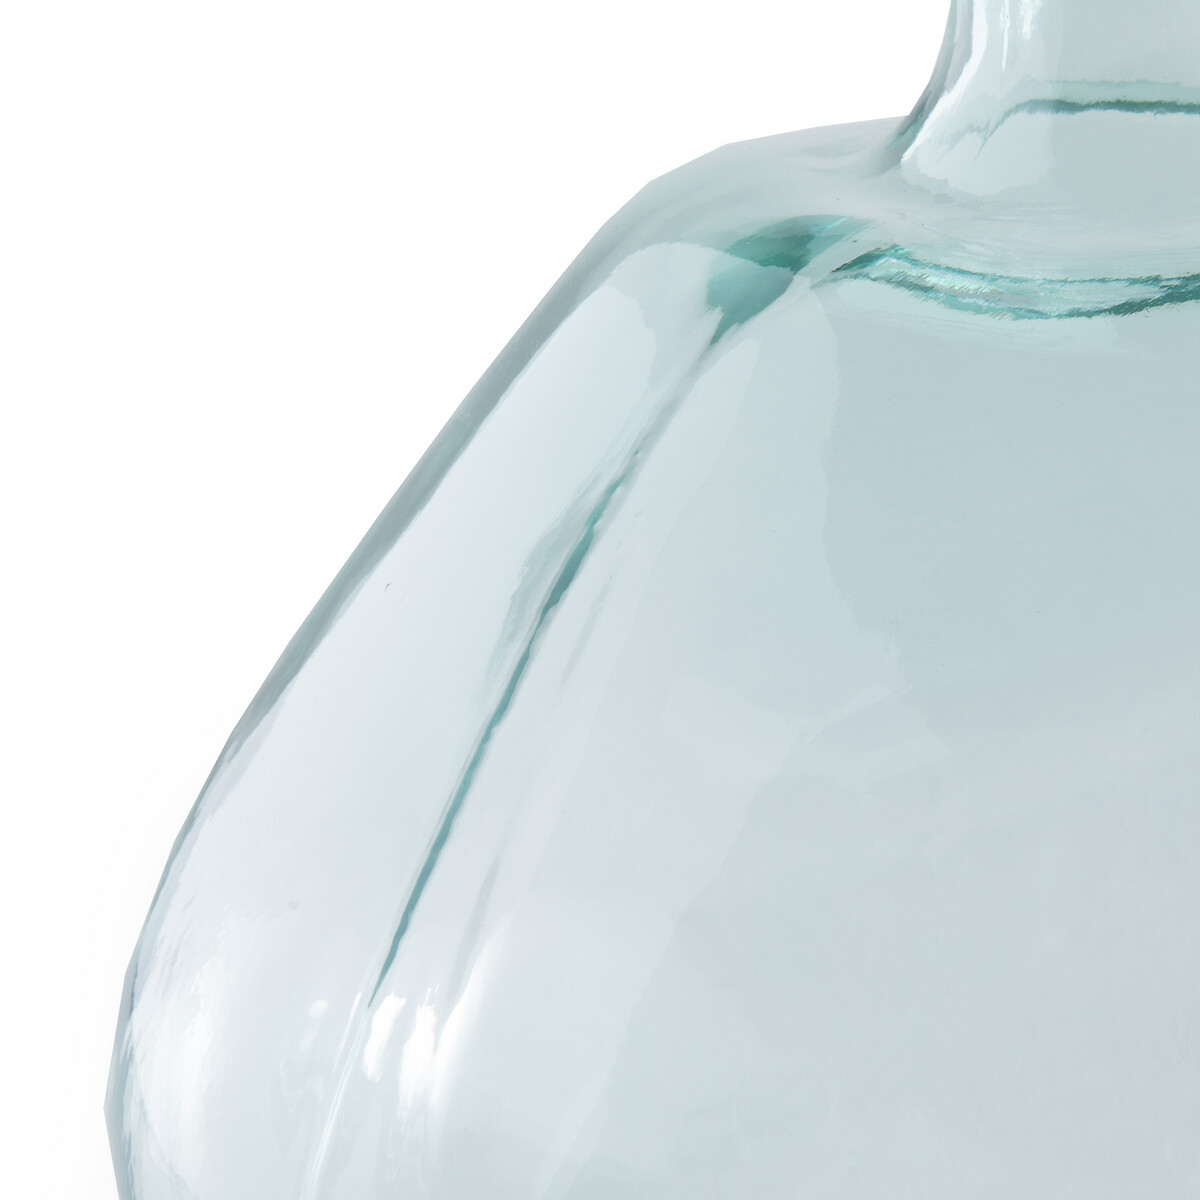 Ваза-бутыль LaRedoute Из стекла В33 см Izolia единый размер зеленый - фото 2